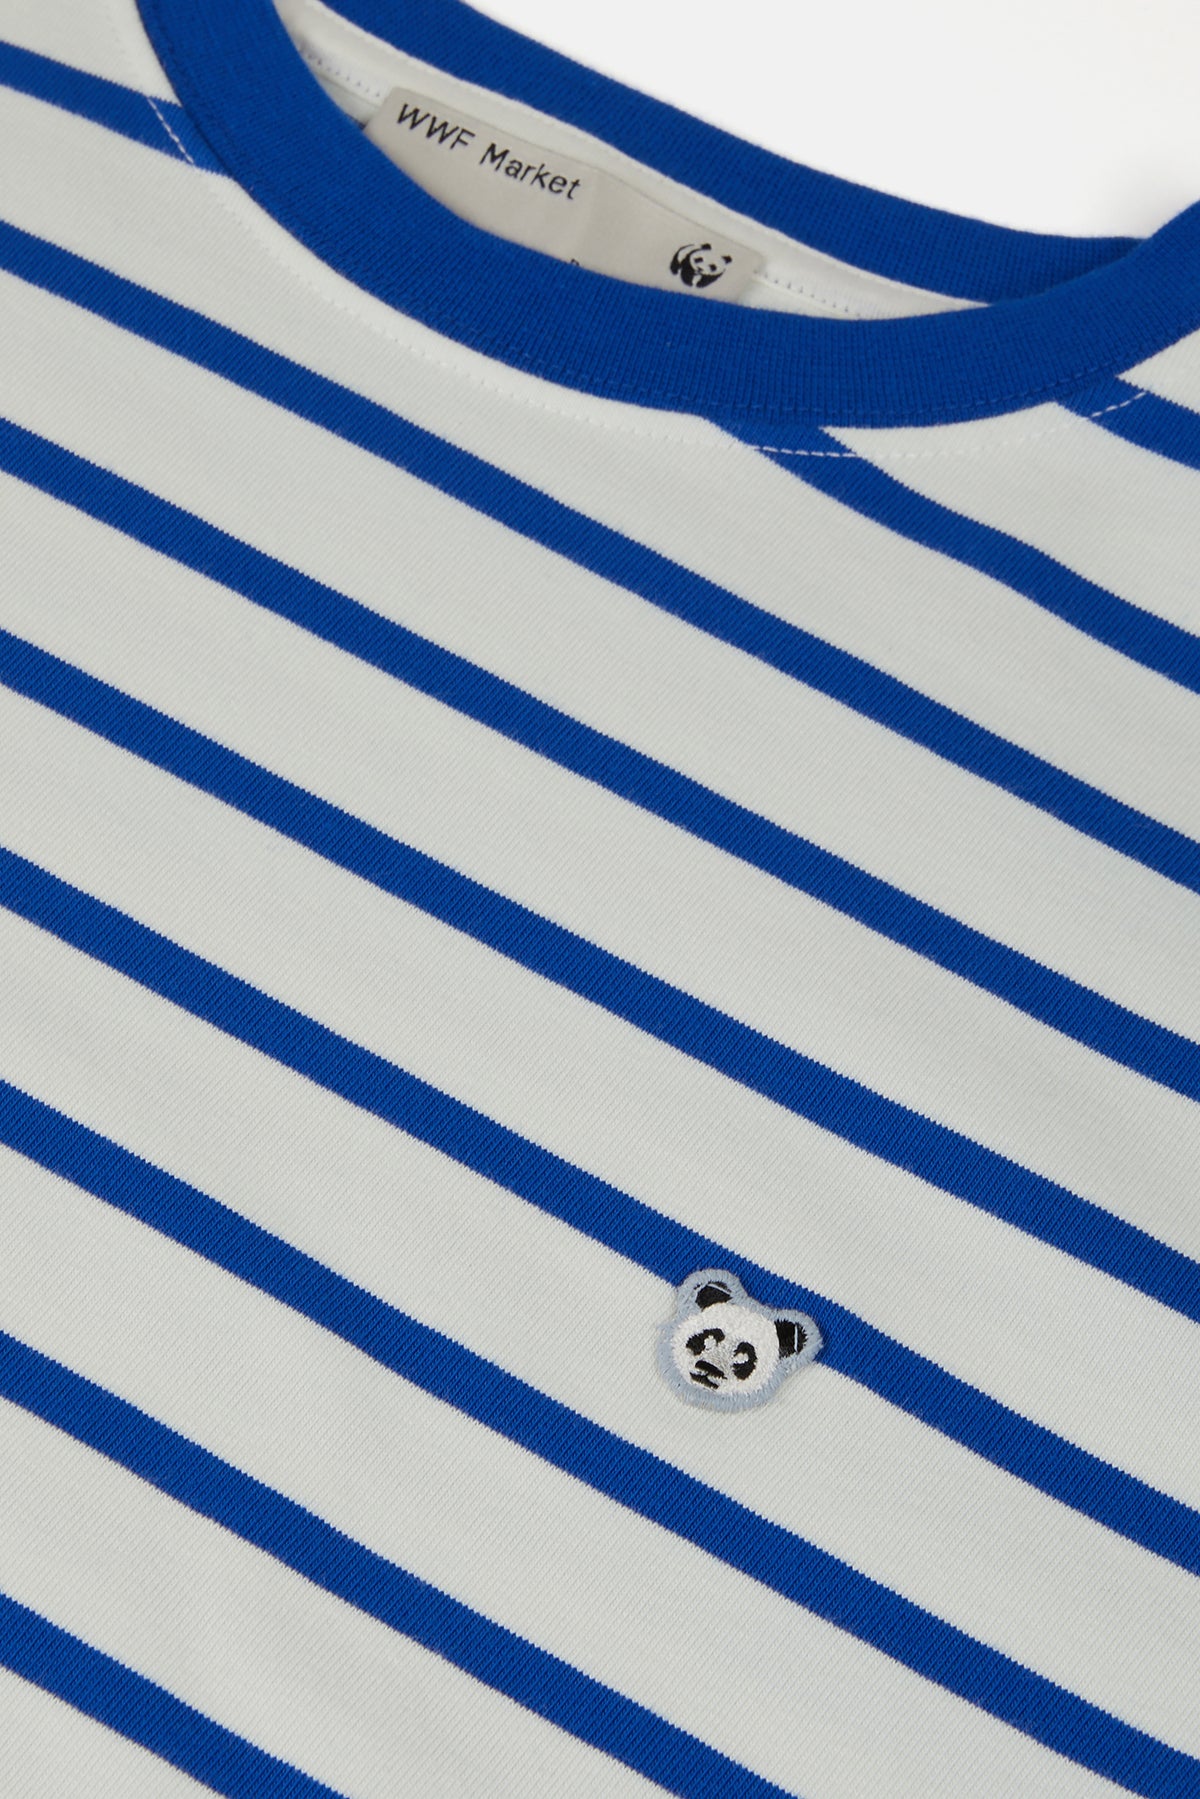 Panda Supreme Çizgili T-Shirt - Mavi/Krem